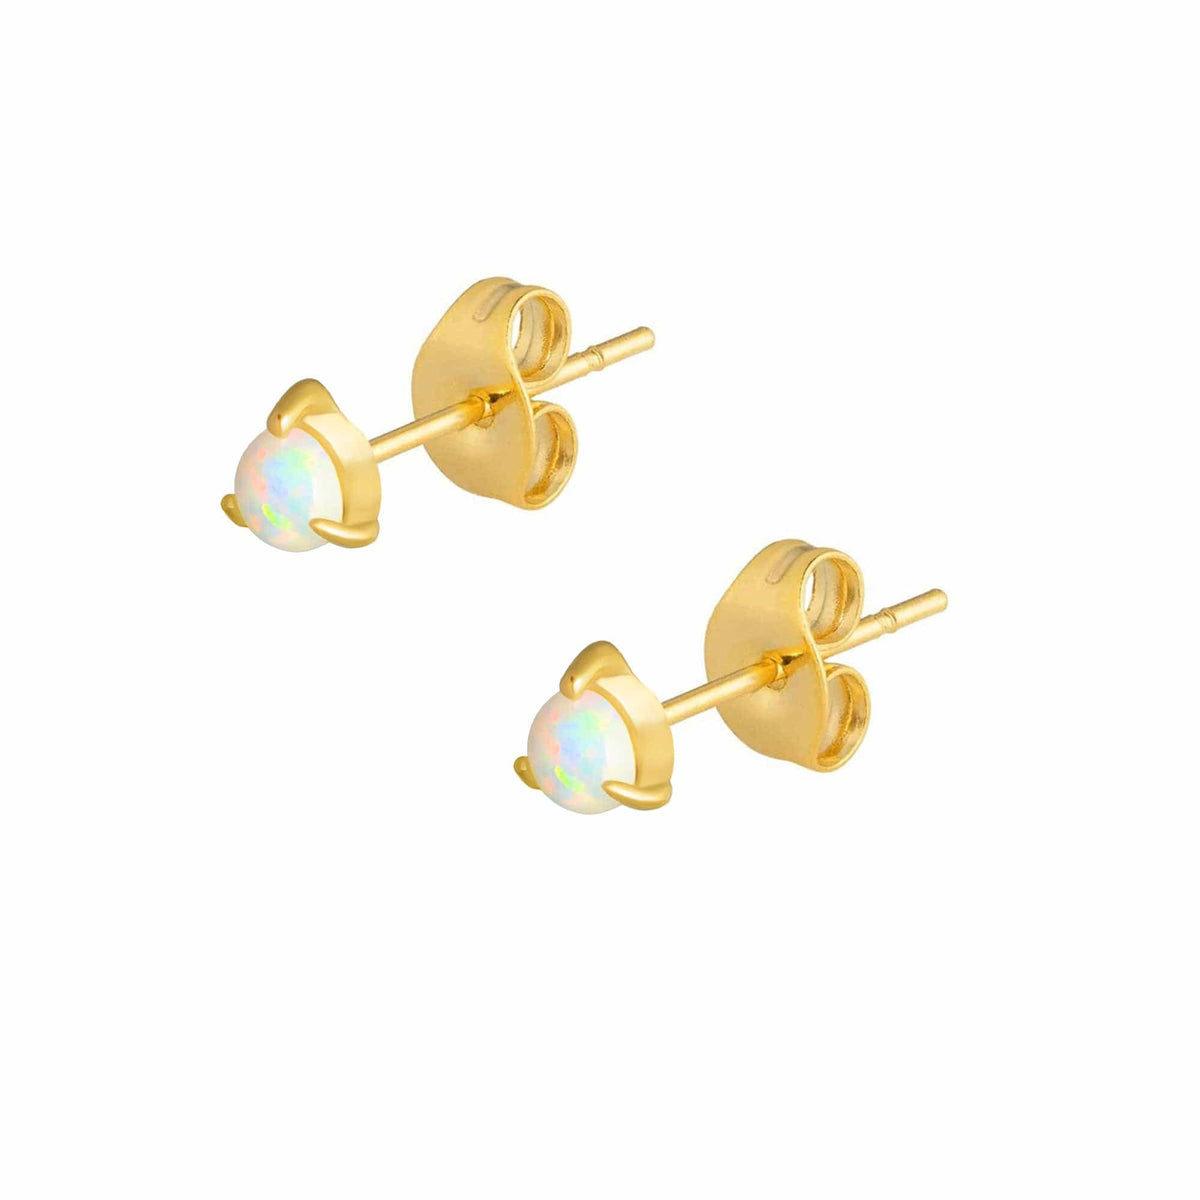 BOHOMOON Stainless Steel Andromeda Opal Stud Earrings Gold